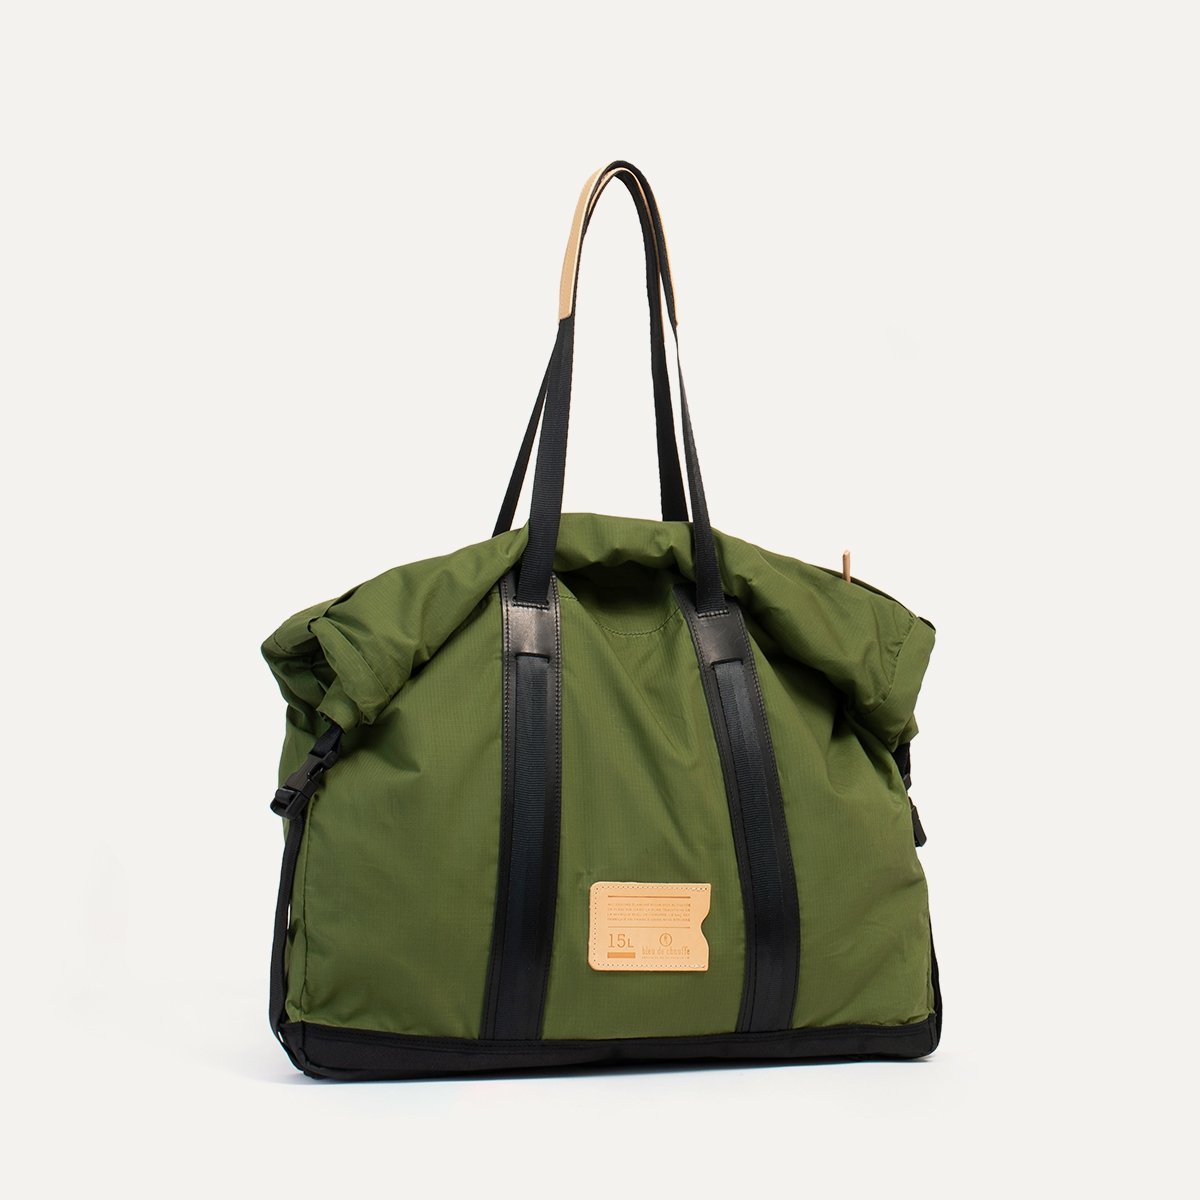 15L Barda Tote bag - Bancha Green (image n°2)